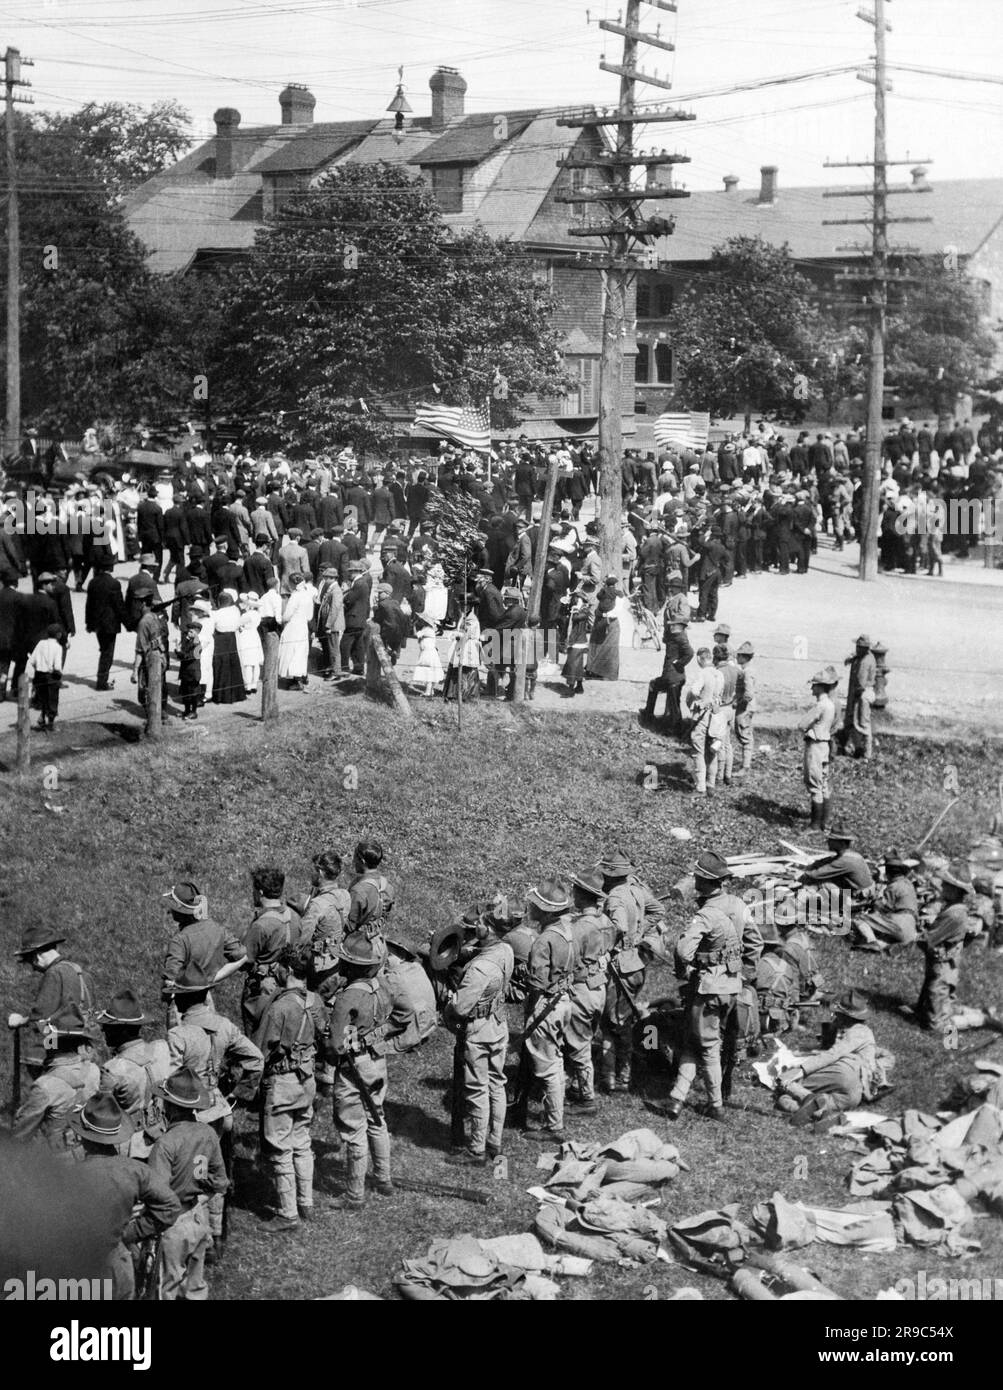 Calumet, Michigan: 1913 Une parade de mineurs de cuivre en grève passant devant les offvices de la compagnie minière Calumet et Hecla, tandis que les troupes de la Garde nationale restent à côté en cas de problème. Banque D'Images